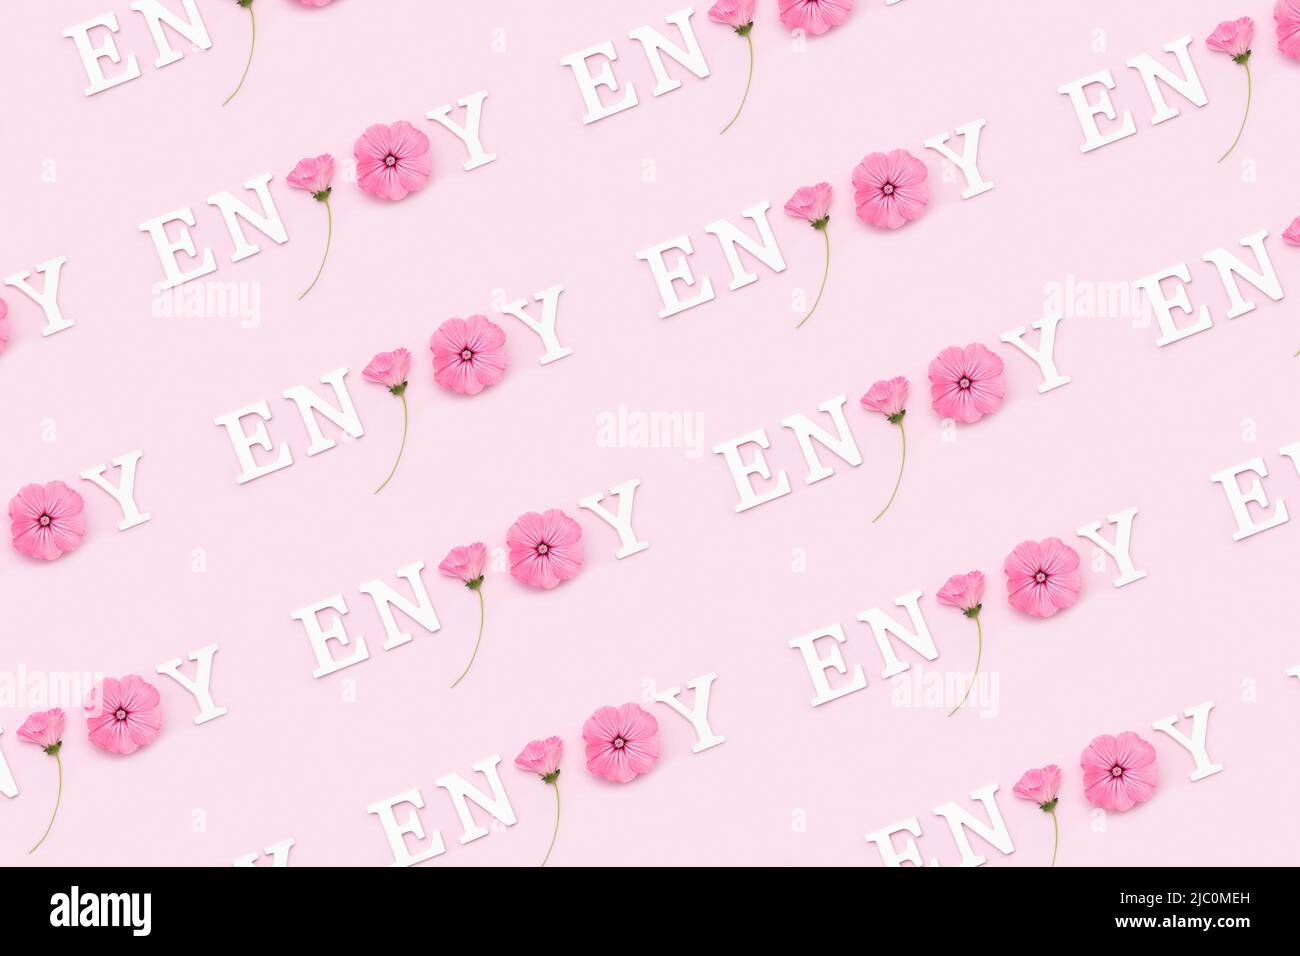 Profitez-en. Motif créatif inspiré composé de citations motivationnelles de lettres blanches et de fleurs naturelles de beauté sur fond rose. Banque D'Images